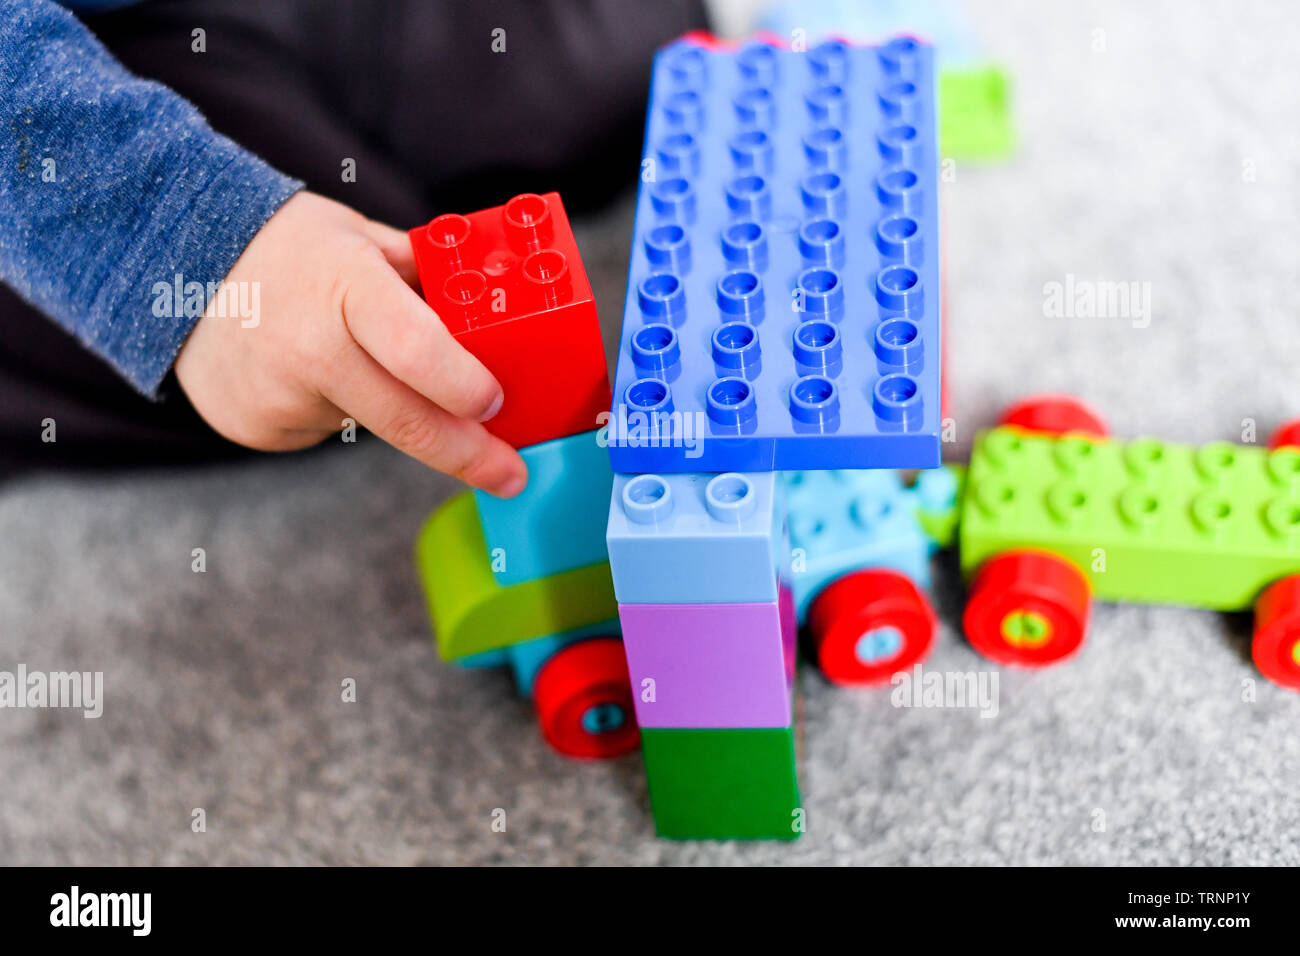 Ein junge Kleider in Gap und Maske spielt mit Lego duplo Bausteine Stockfoto